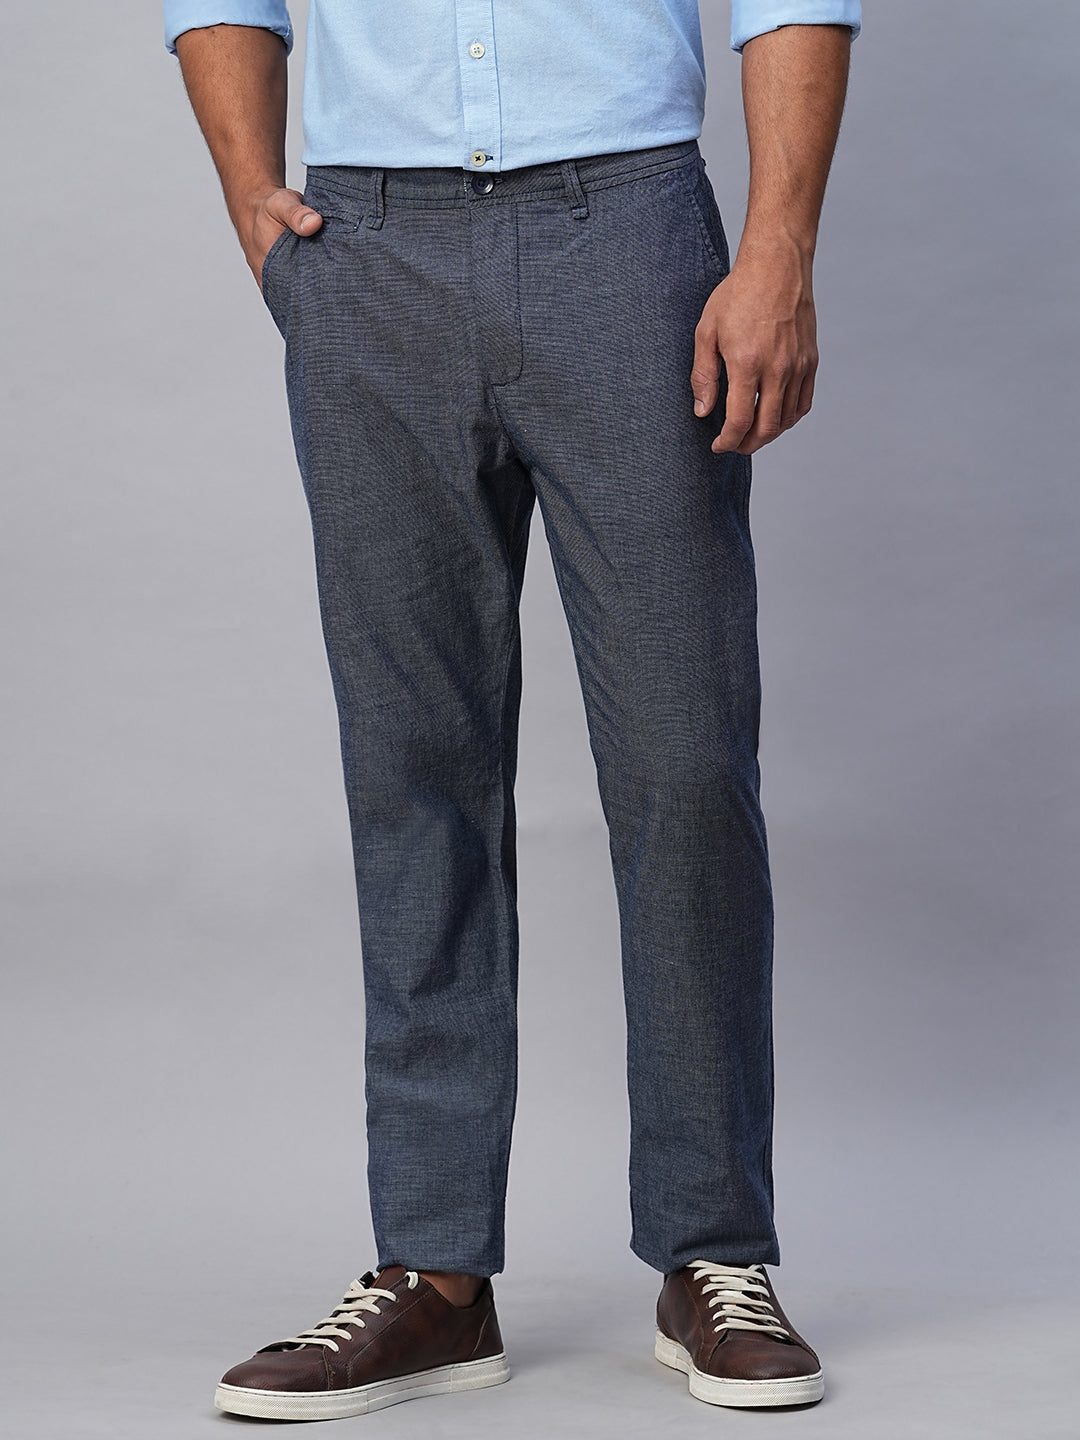 Men's Navy Cotton Slim Fit Pant